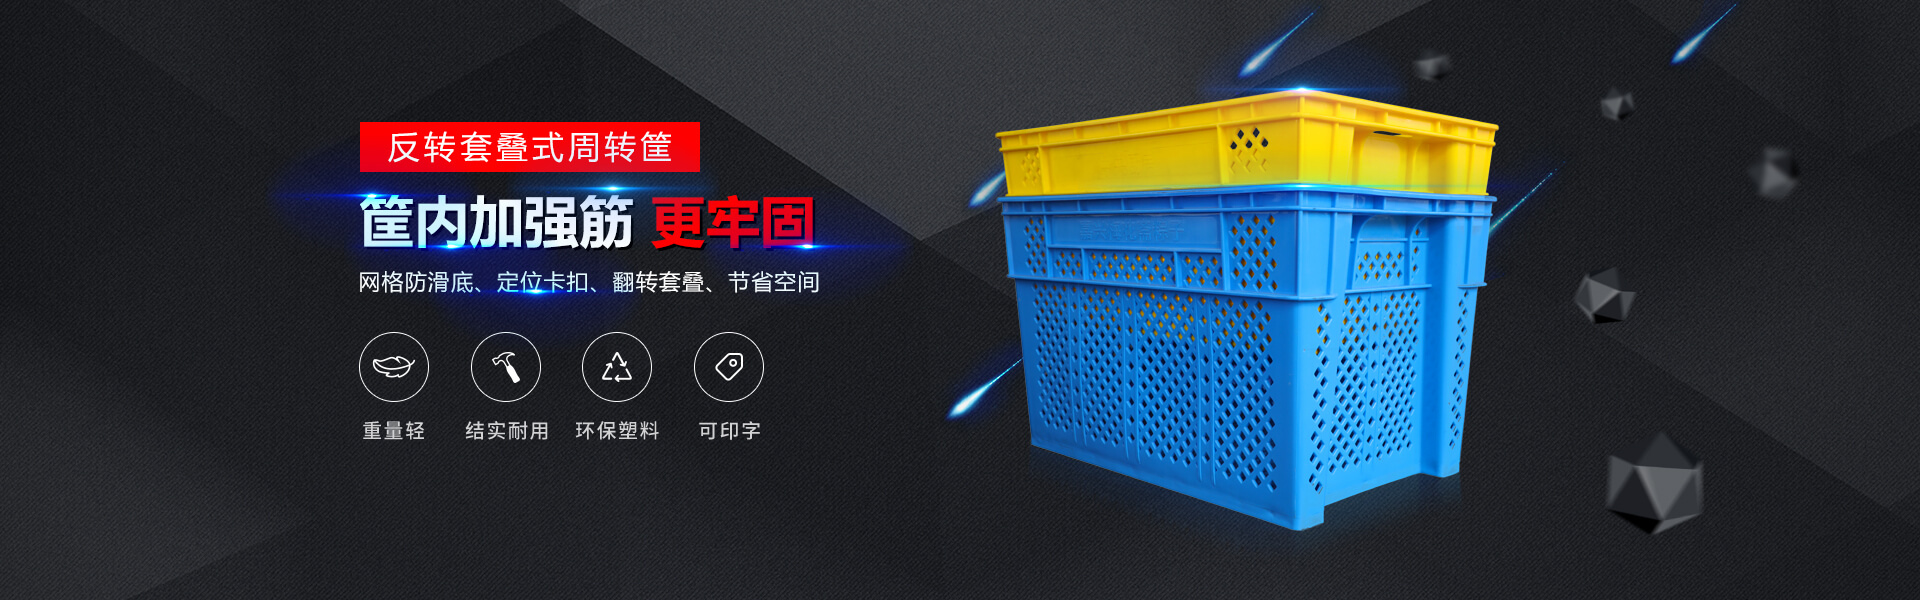 青岛若贤自动化主营零件盒,塑料零件盒,塑料托盘等产品!